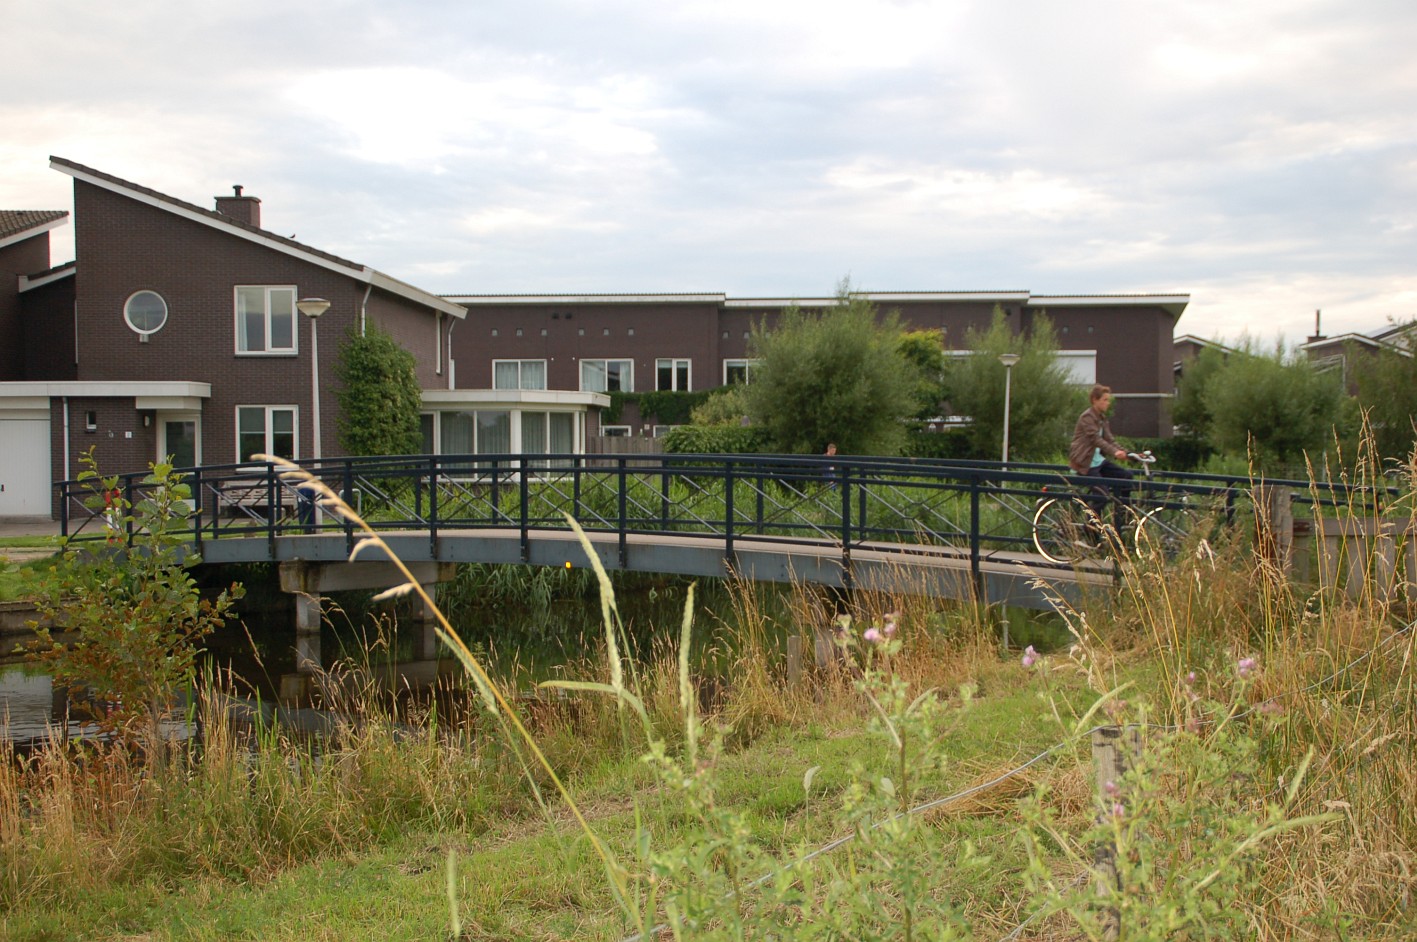 Fietsbrug De Kwakel mag verplaatst worden - Meerbode.nl (persbericht)